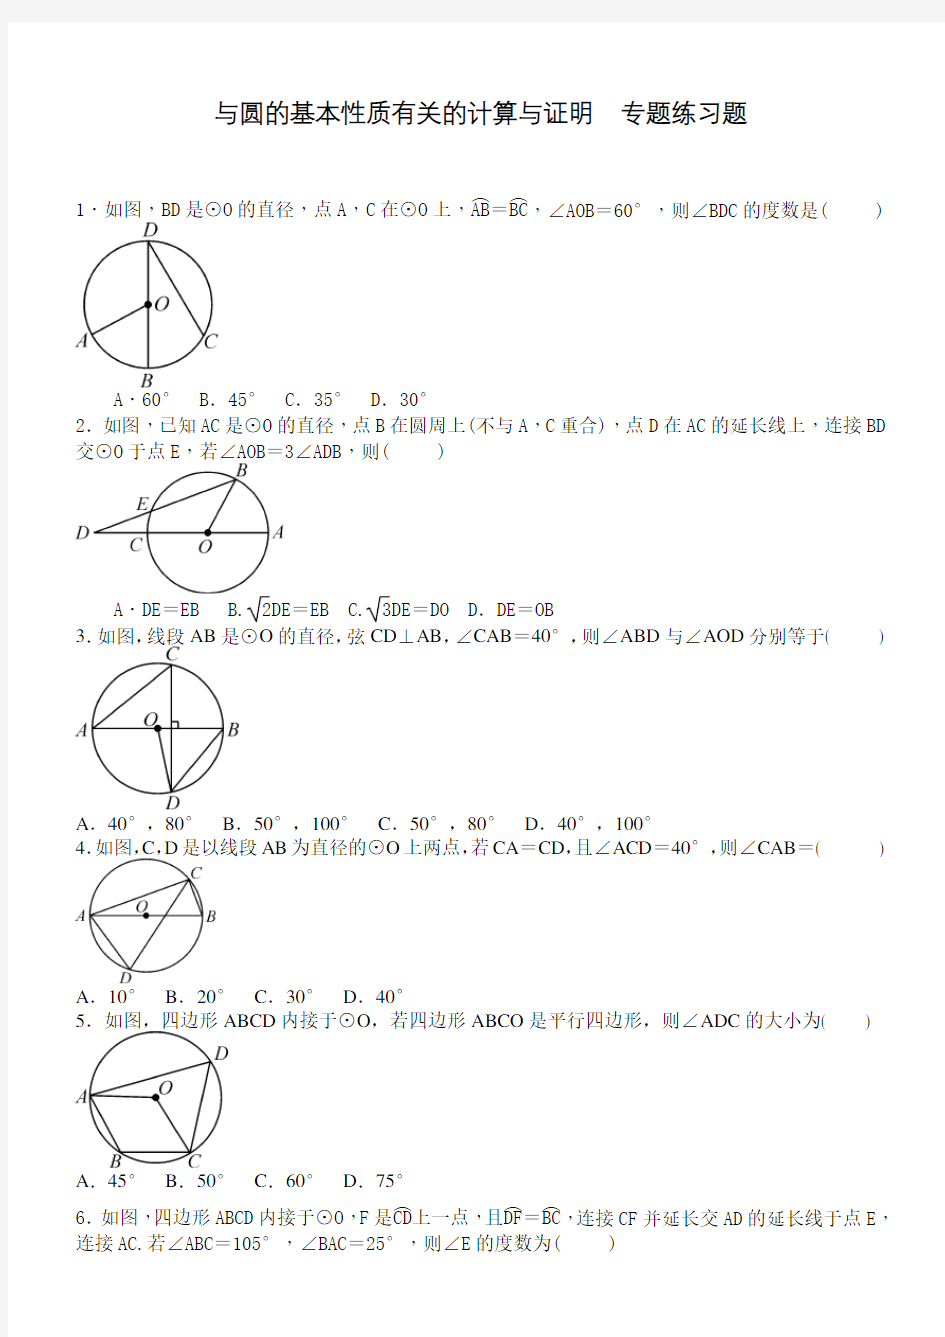 与圆的基本性质有关的计算与证明  专题练习题